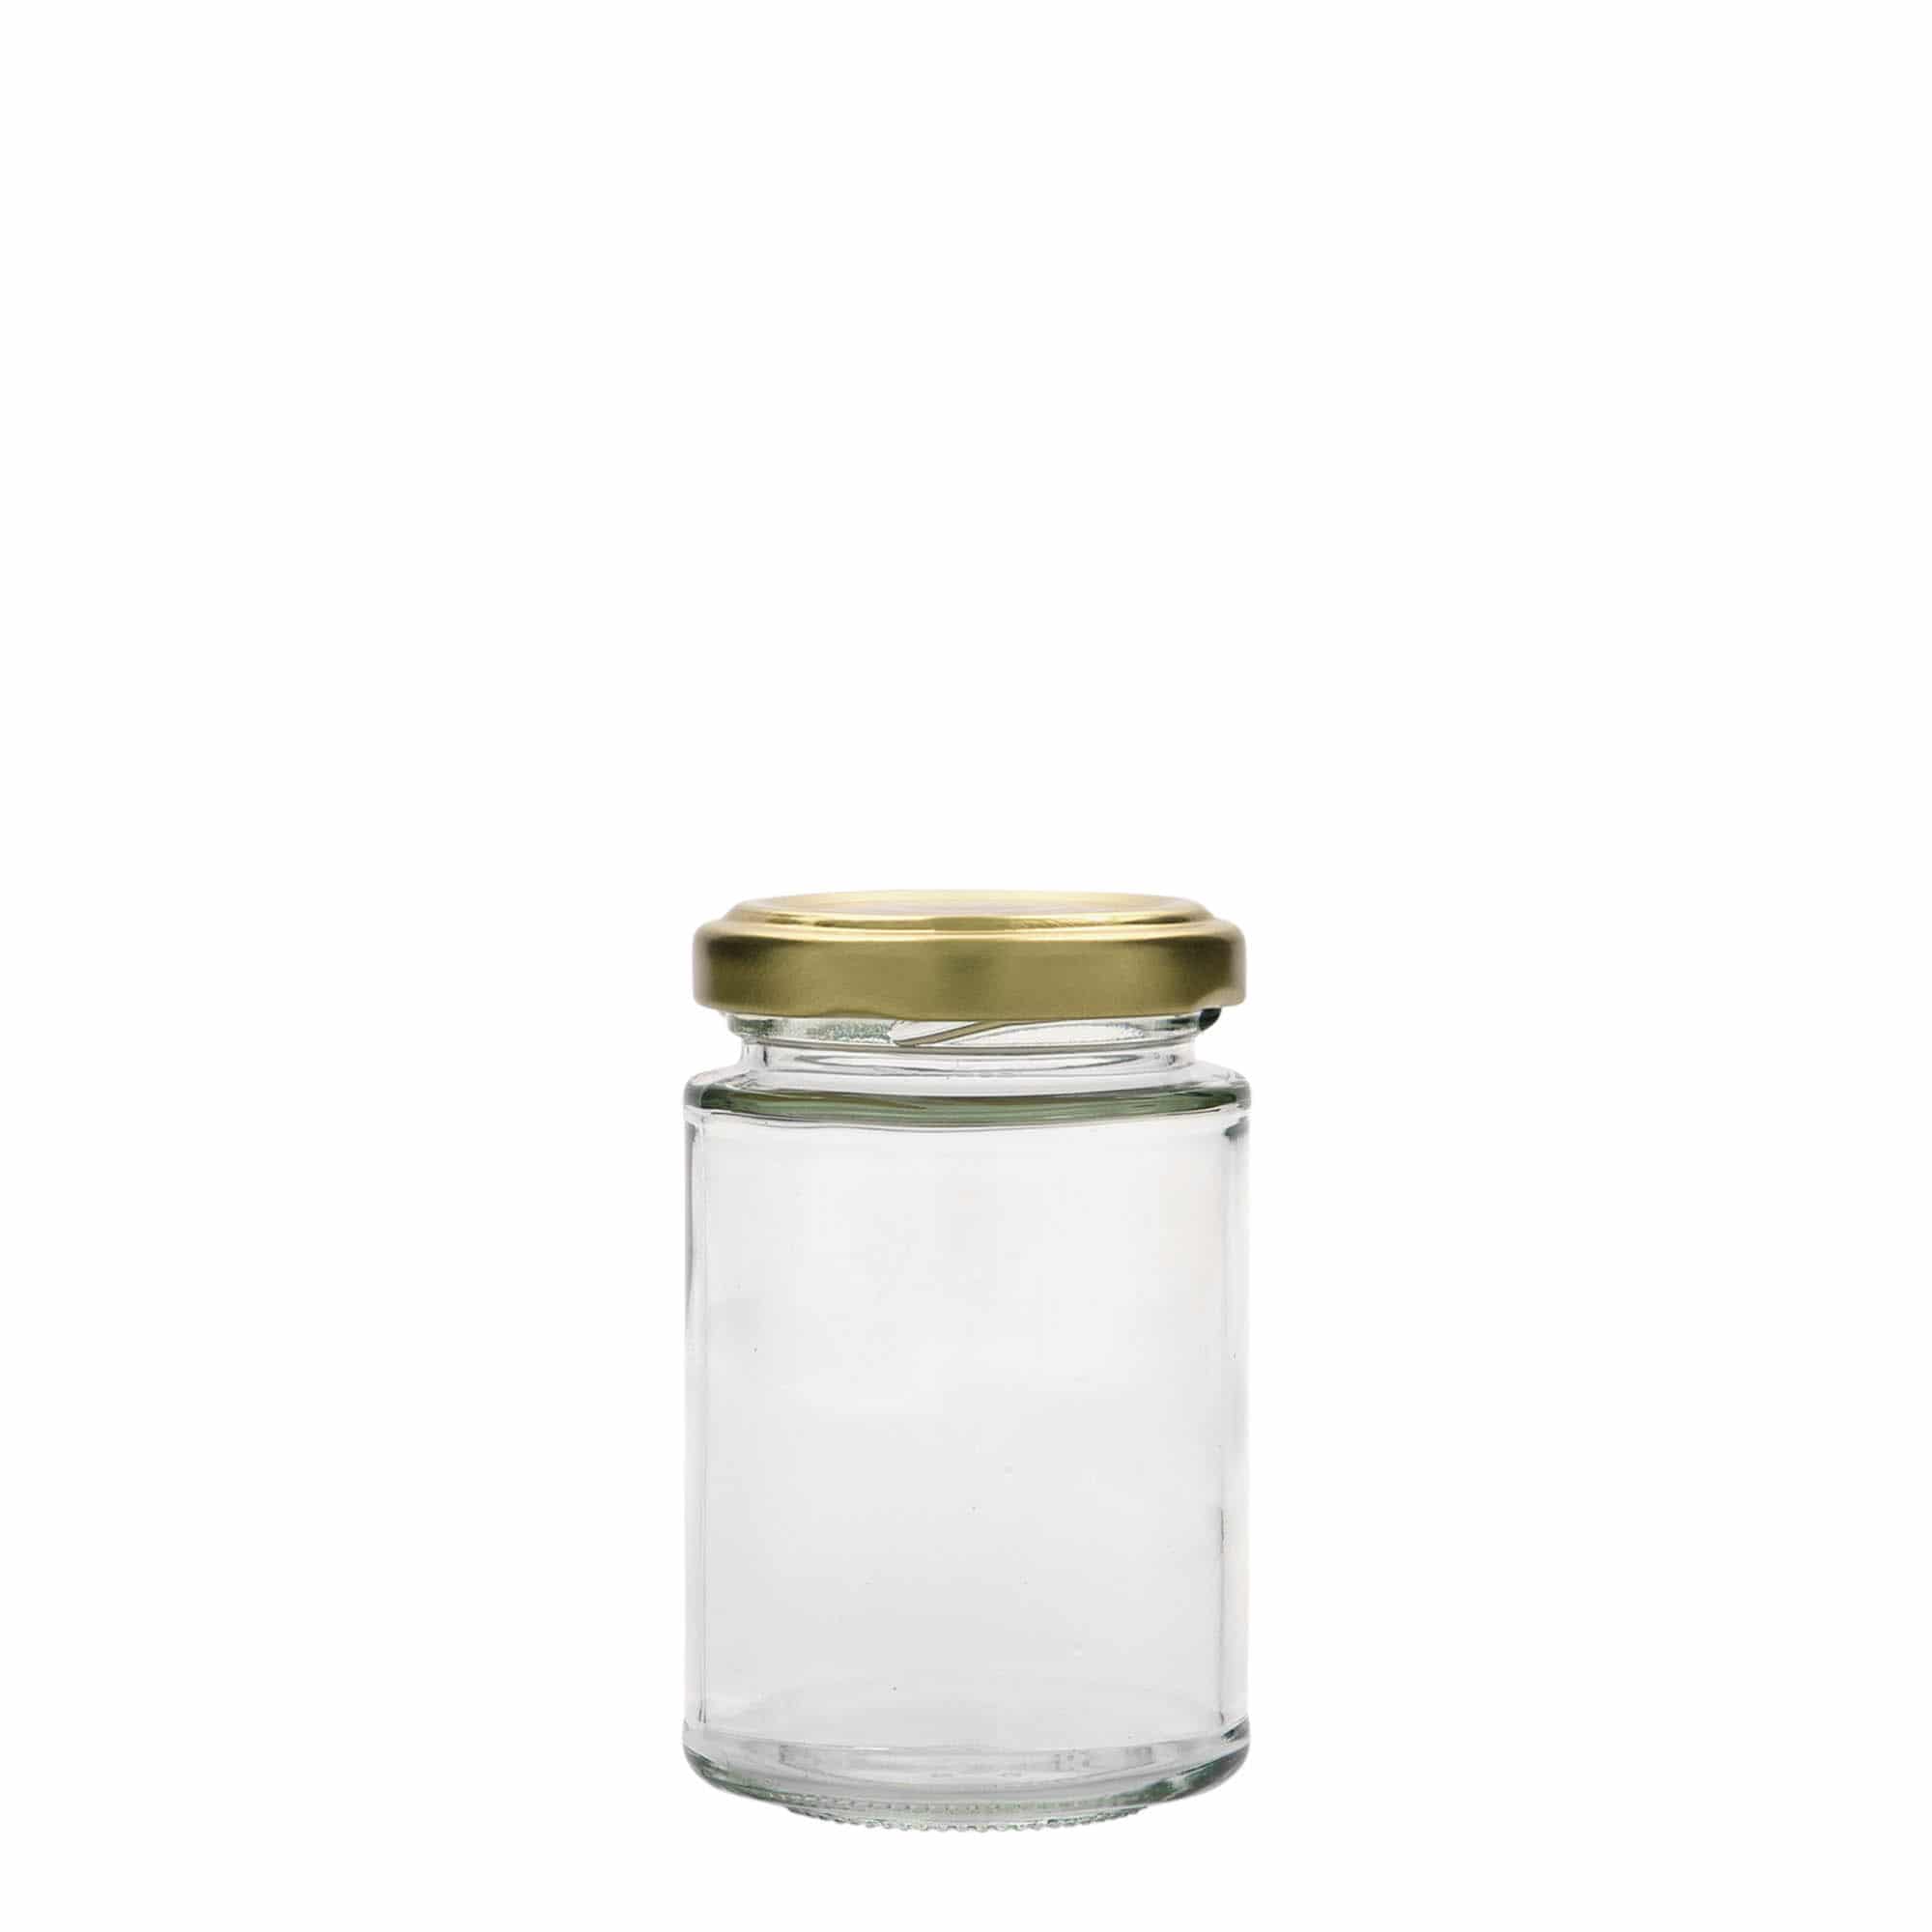 110 ml round jar, closure: twist off (TO 48)